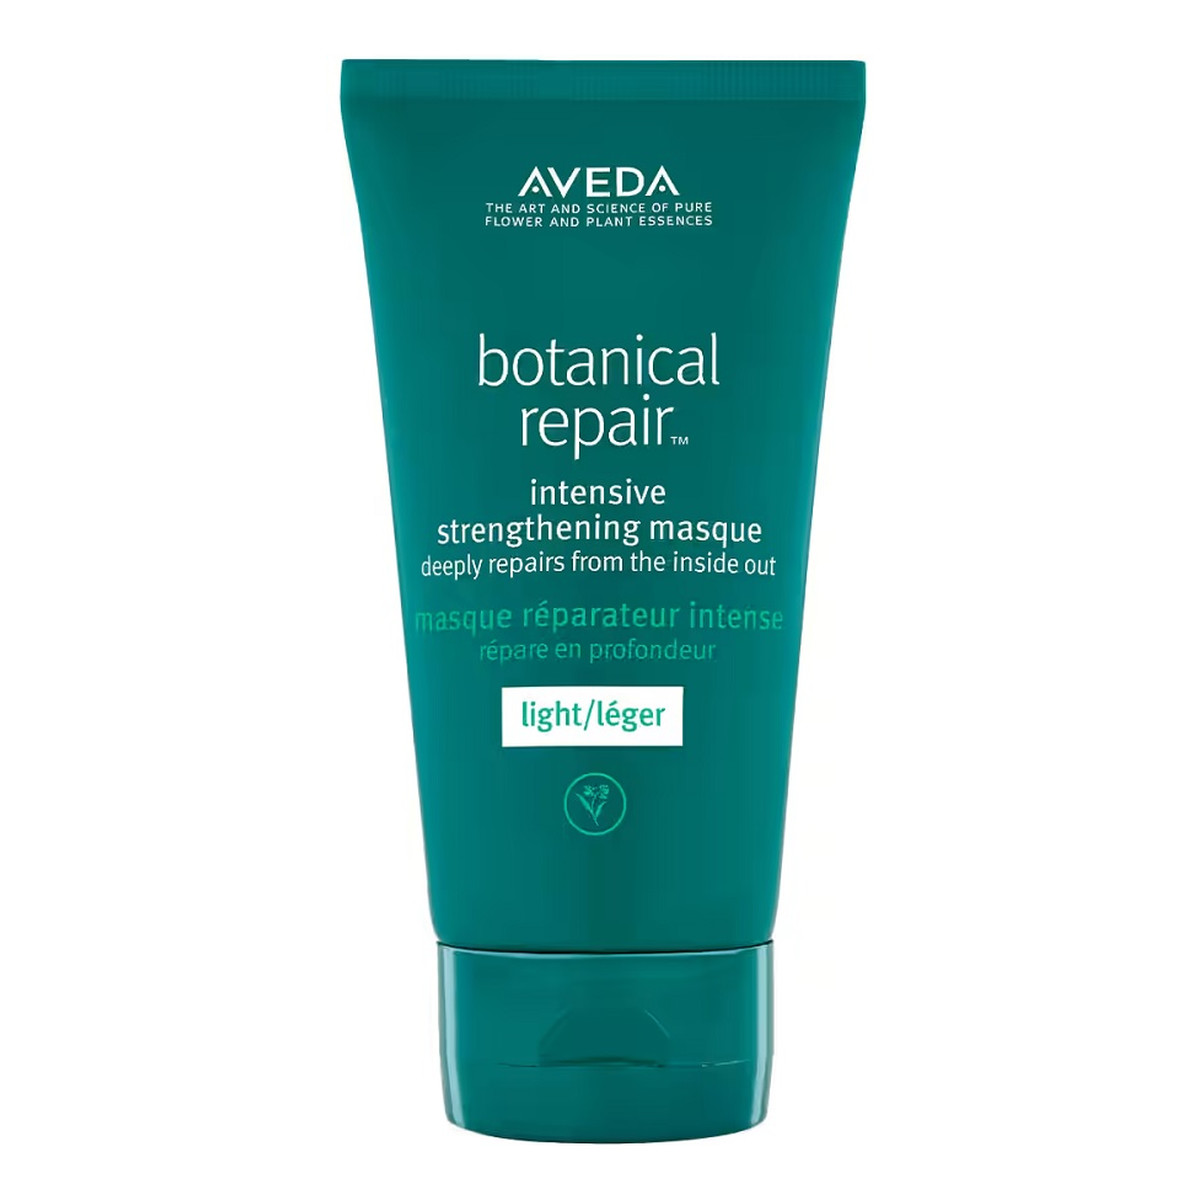 Aveda Botanical repair intensive strengthening masque light intensywnie wzmacniająca lekka maska do włosów 150ml